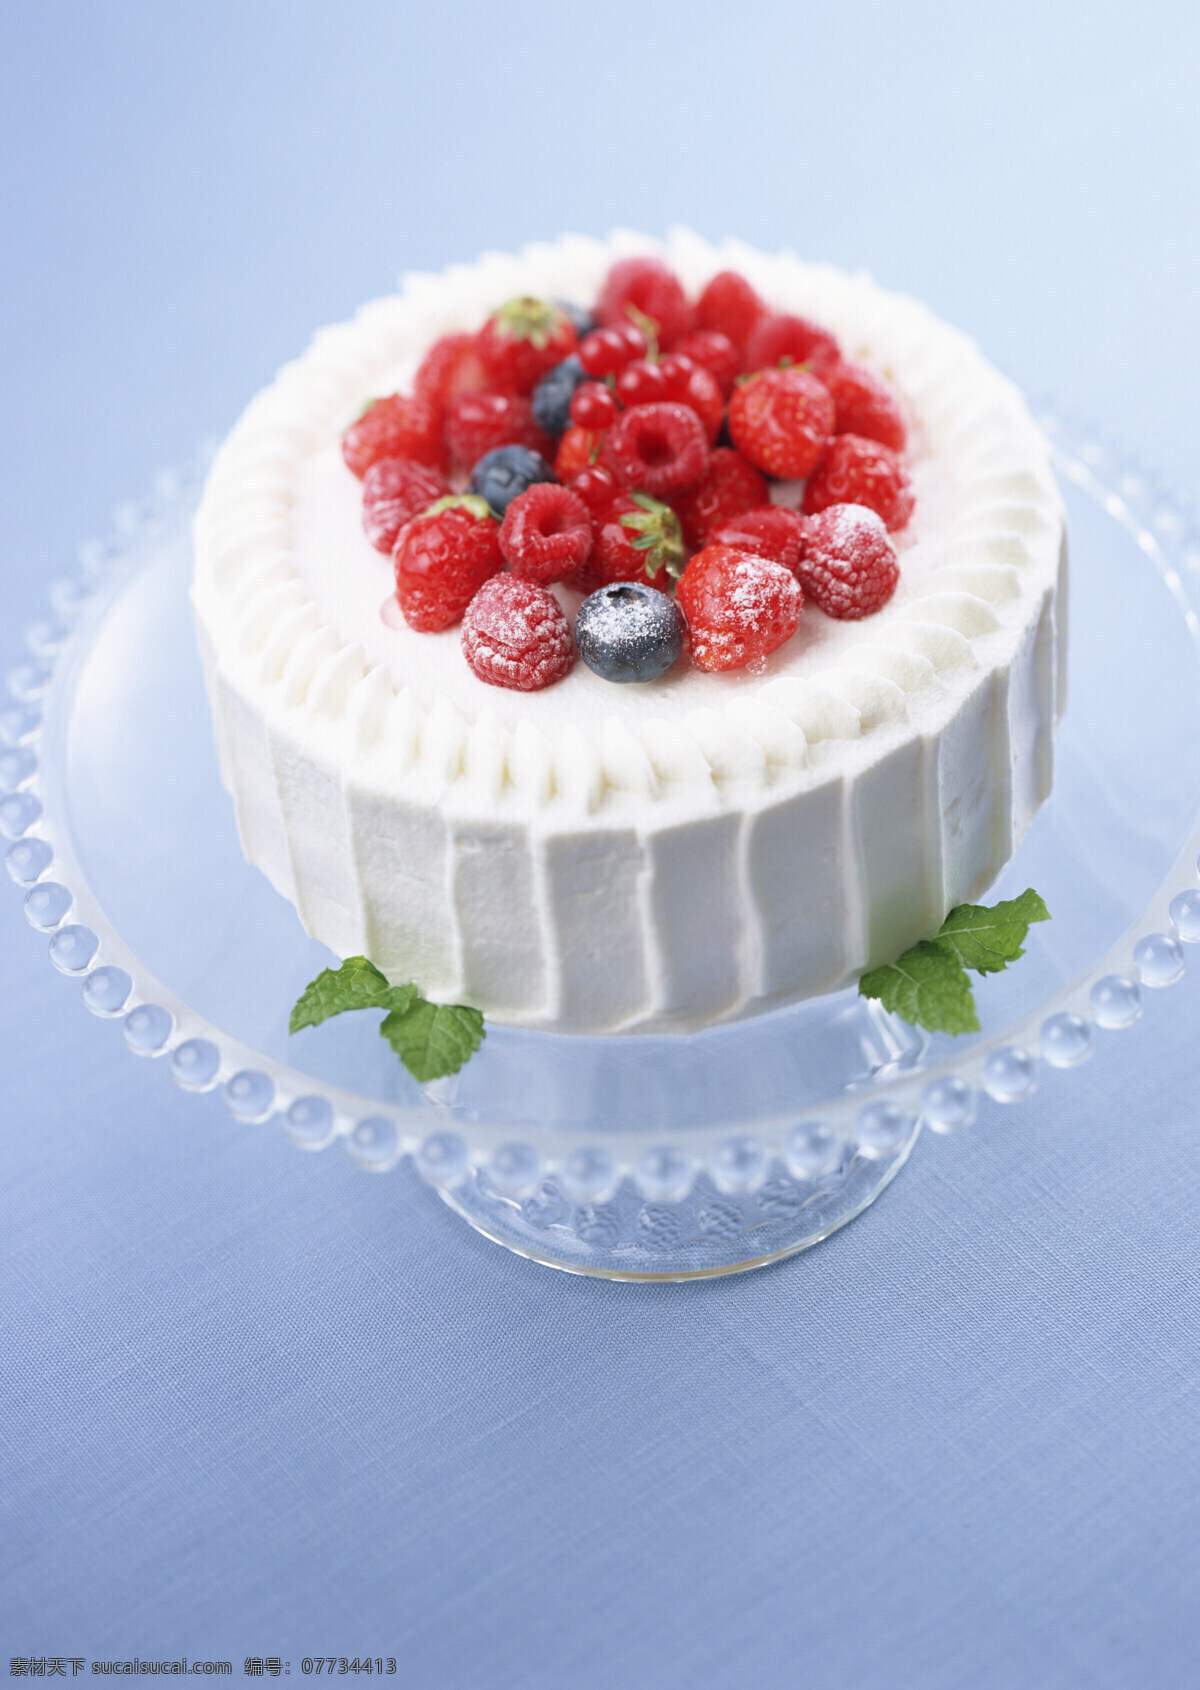 高清图片 蛋糕 慕斯蛋糕 水果蛋糕 草莓 草莓蛋糕 草莓派 手工 烘焙 甜品 甜点 奶油蛋糕 餐饮美食